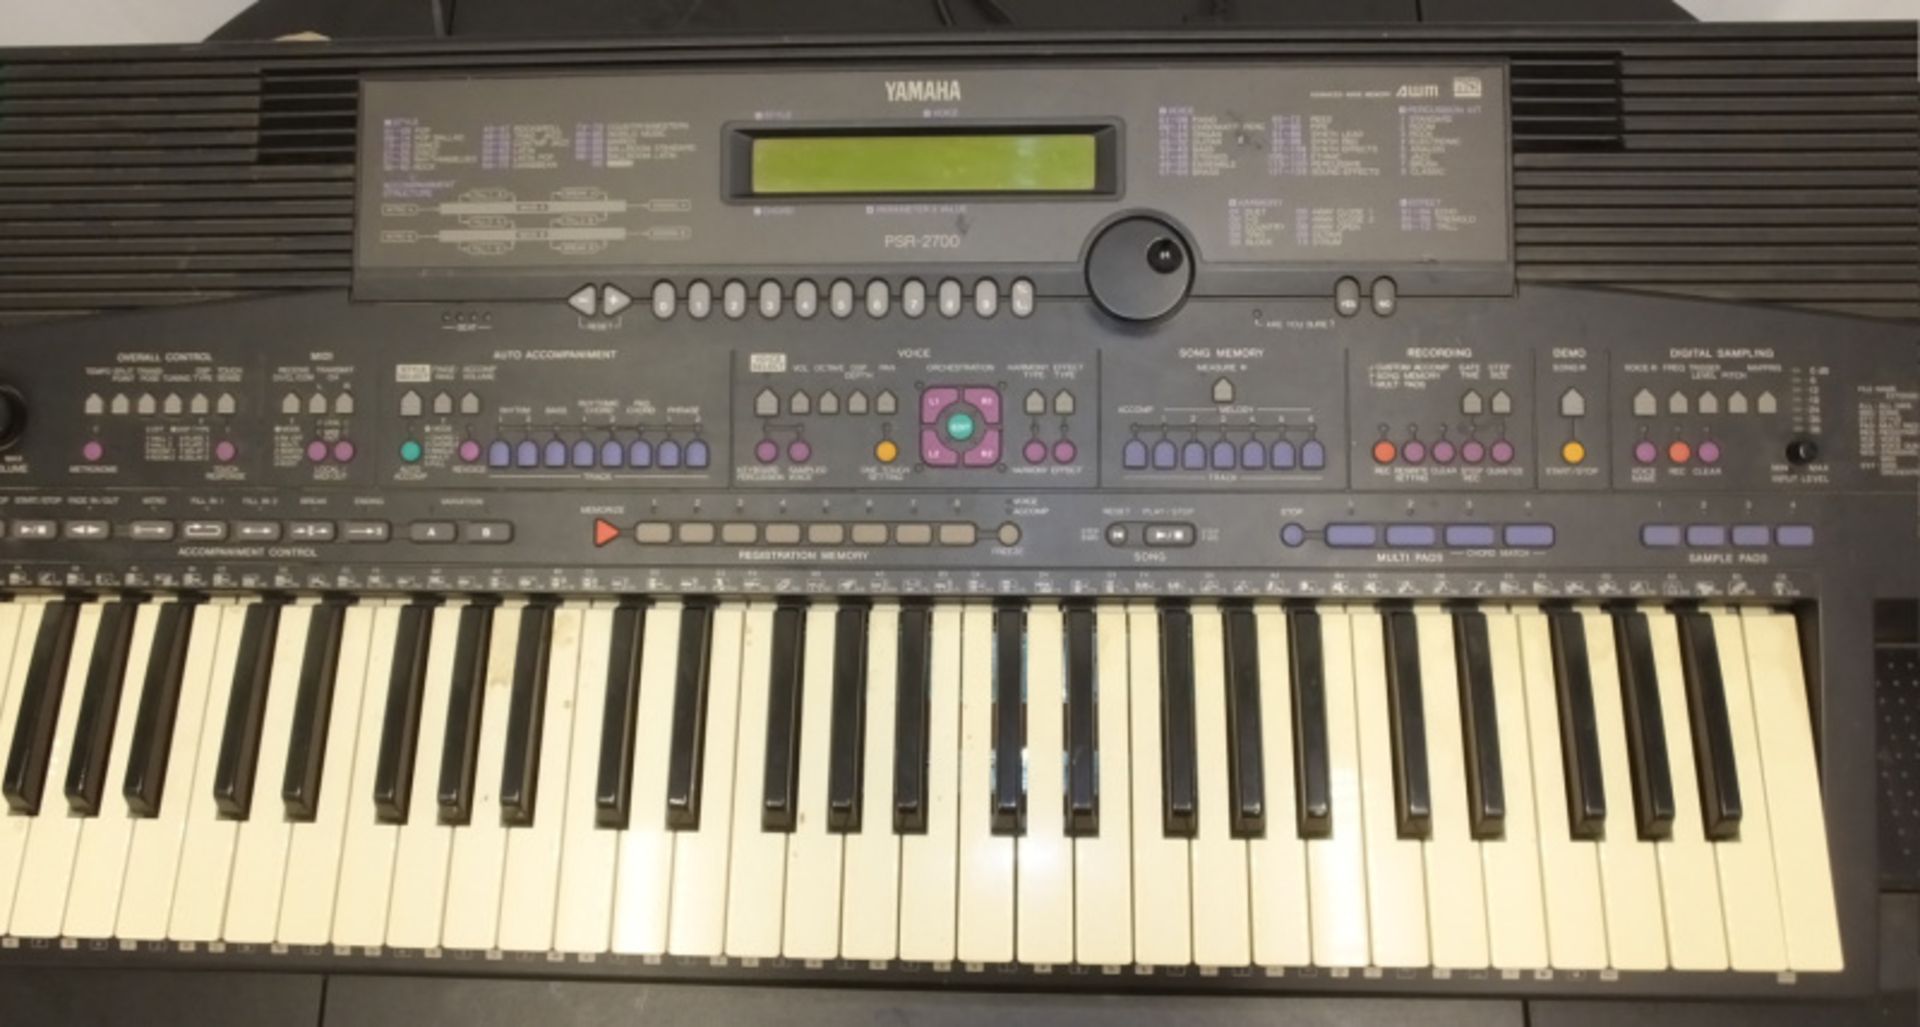 Yamaha PSR-2700 Keyboard - Image 3 of 10